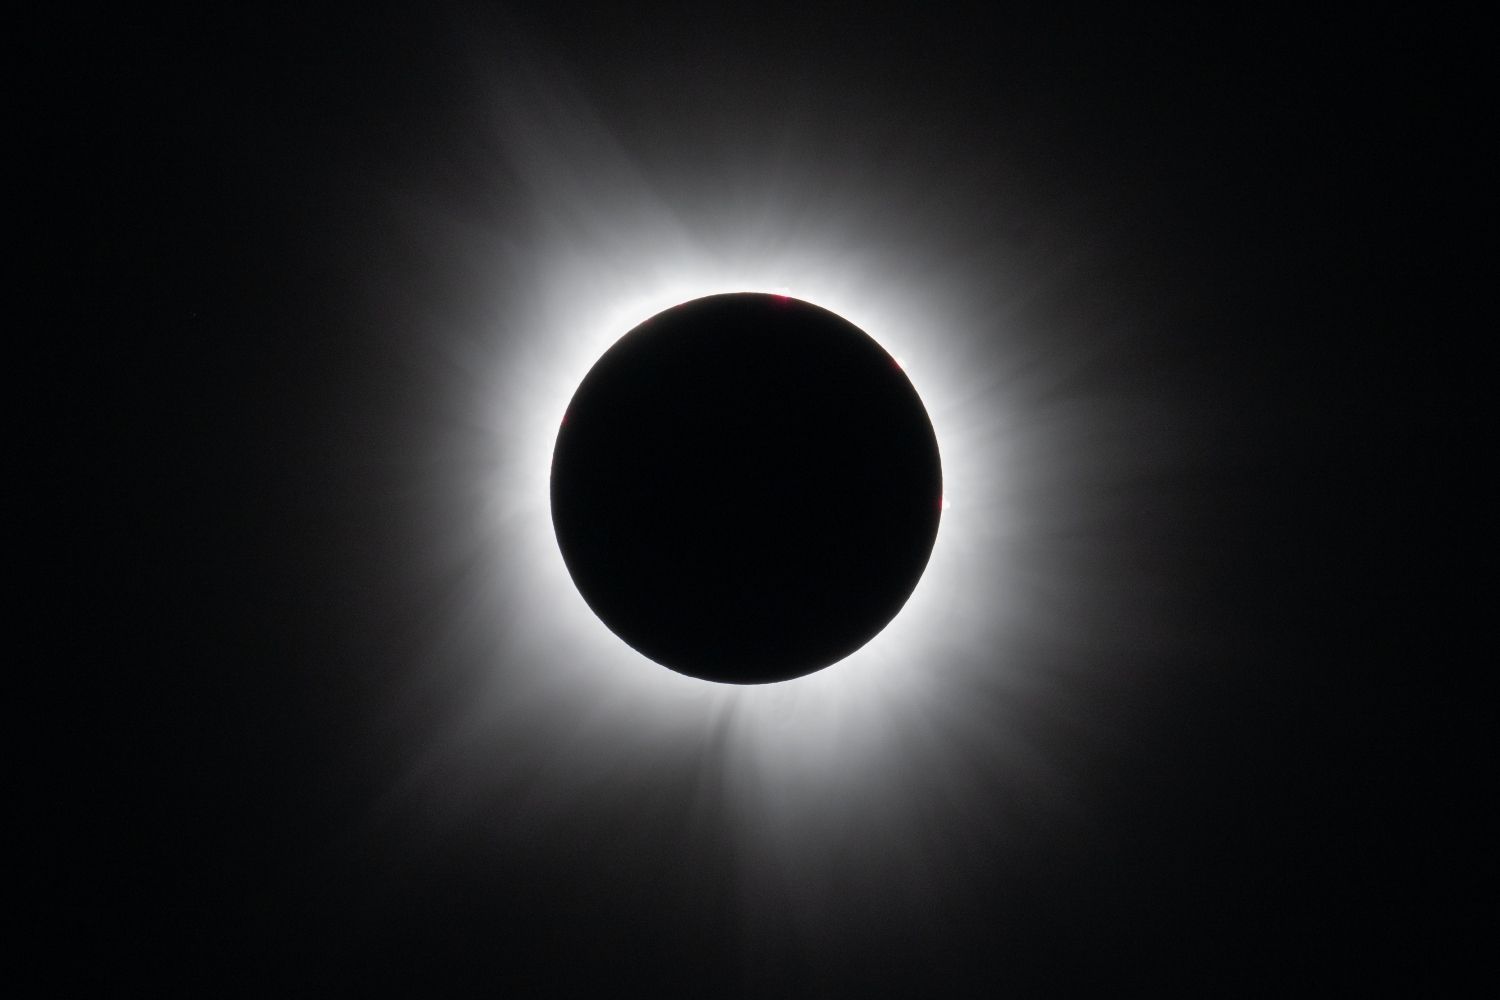   Eclipse solar total en Dallas, Texas, el lunes 8 de abril de 2024 | NASA 